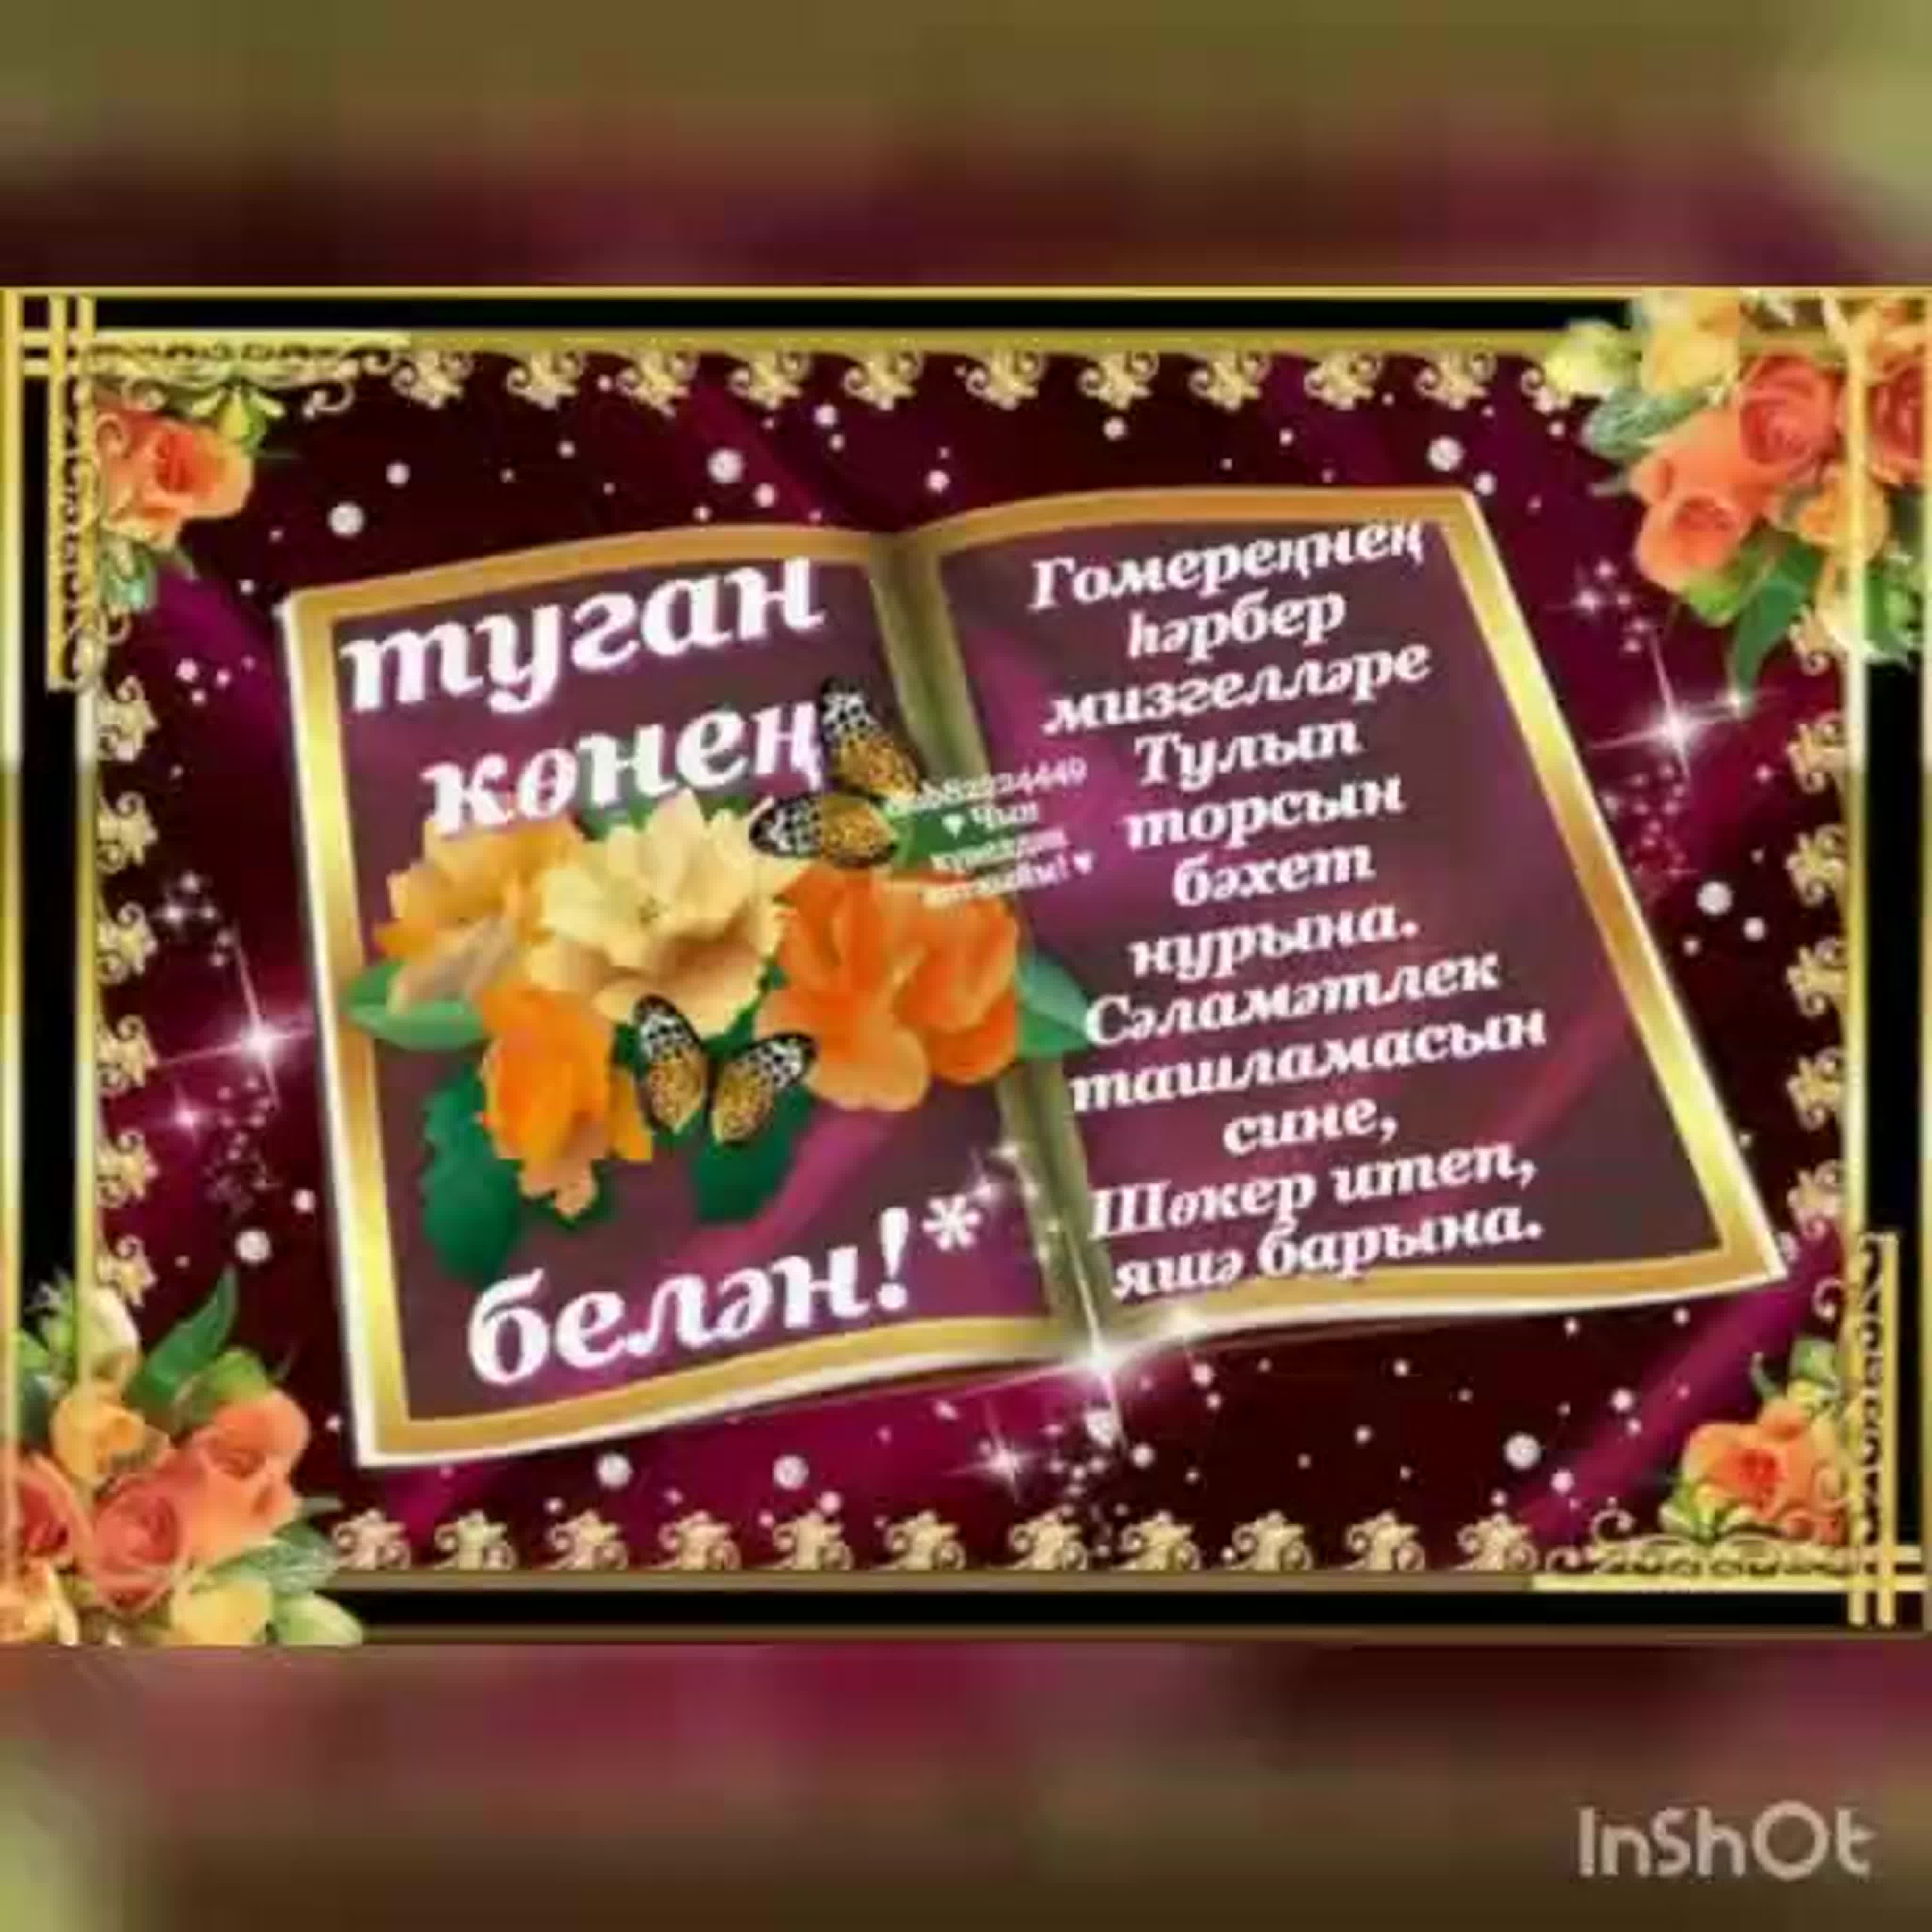 Поздравления с днем рождения на татарском языке с переводом на русский